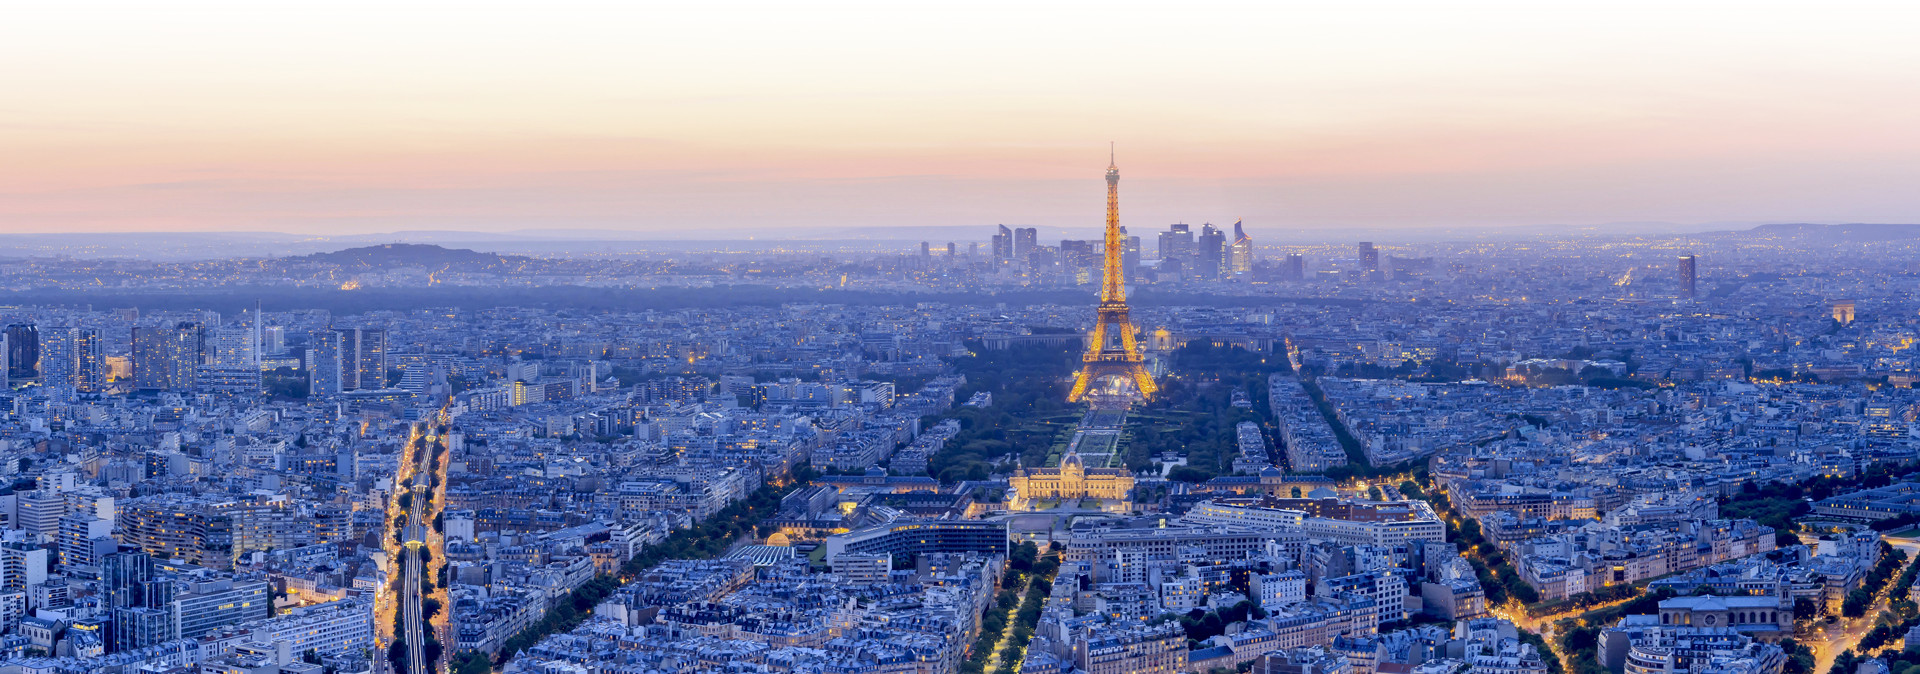 Atardecer en París con la torre Eiffel iluminada